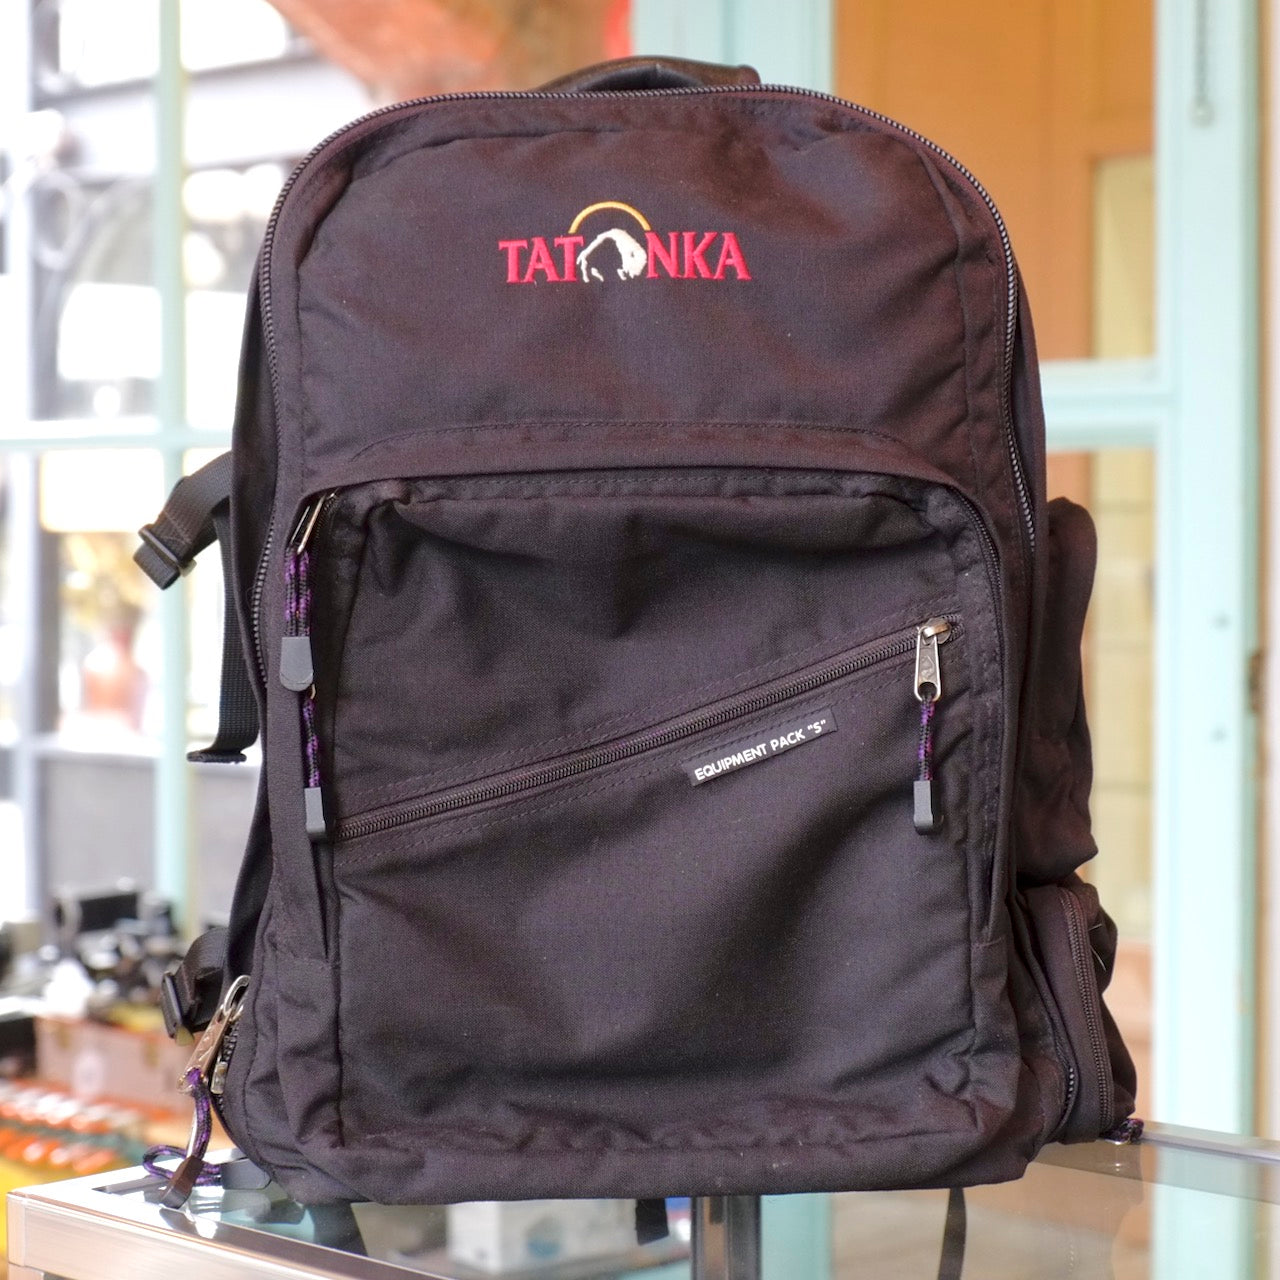 Tatonka Equipment Pack “S”